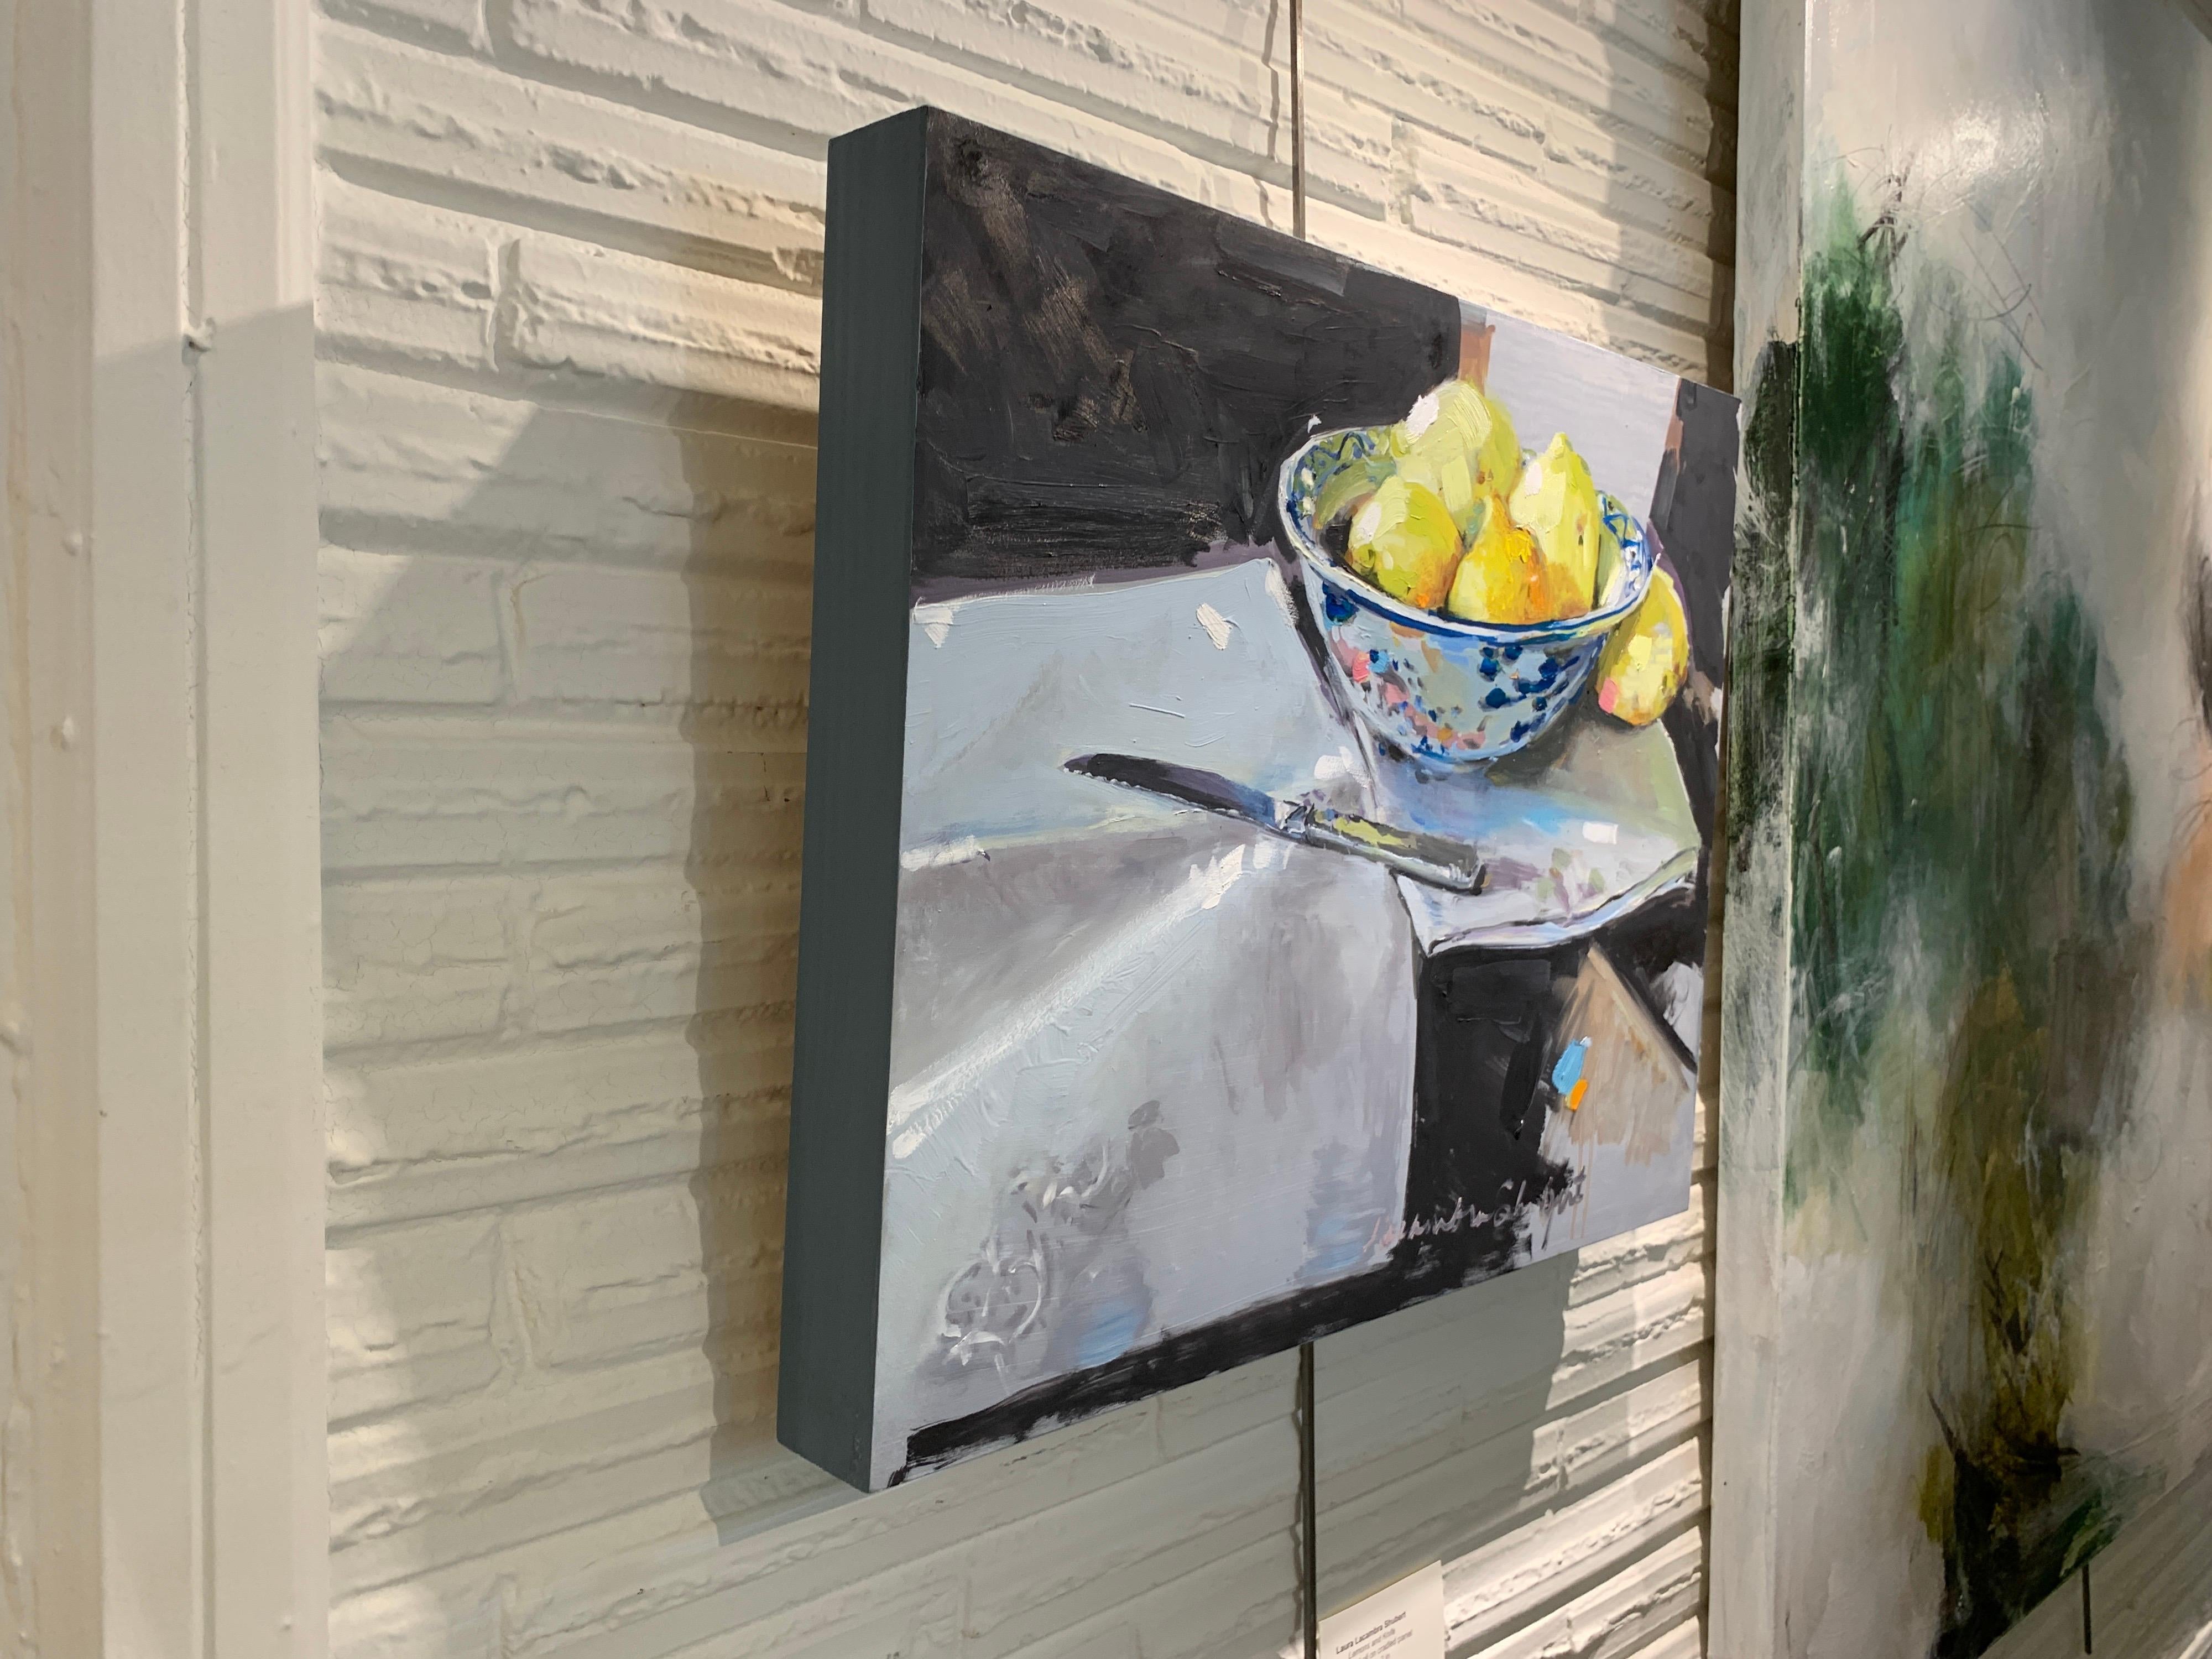 'Lemons and a Knife' est une petite peinture impressionniste à l'huile sur toile de nature morte créée par l'artiste américaine Laura L. Shubert en 2020. Avec une palette composée de tons beiges, bleus, noirs, jaunes, orange et roses, le tableau